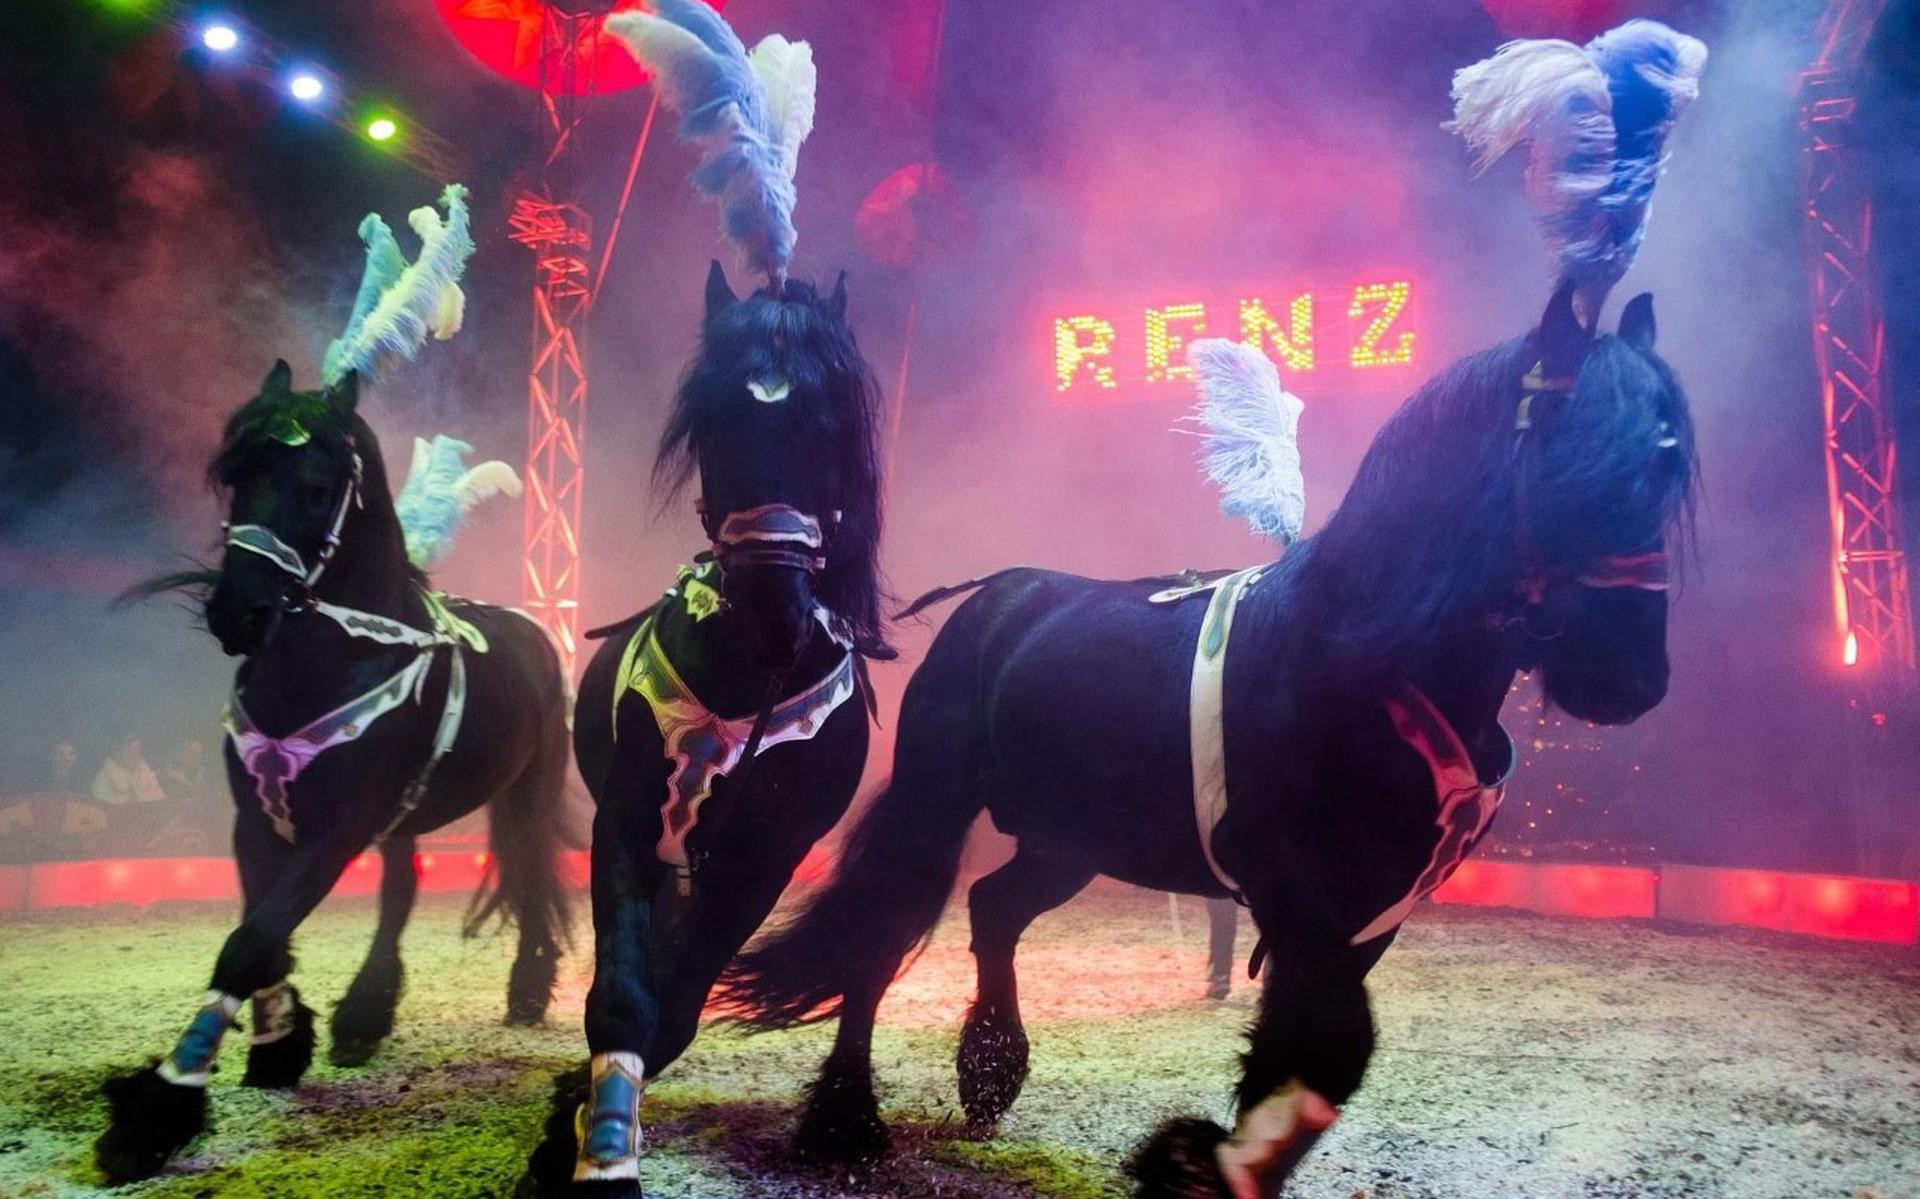 Het circus laat paarden, acrobaten en clowns zien.